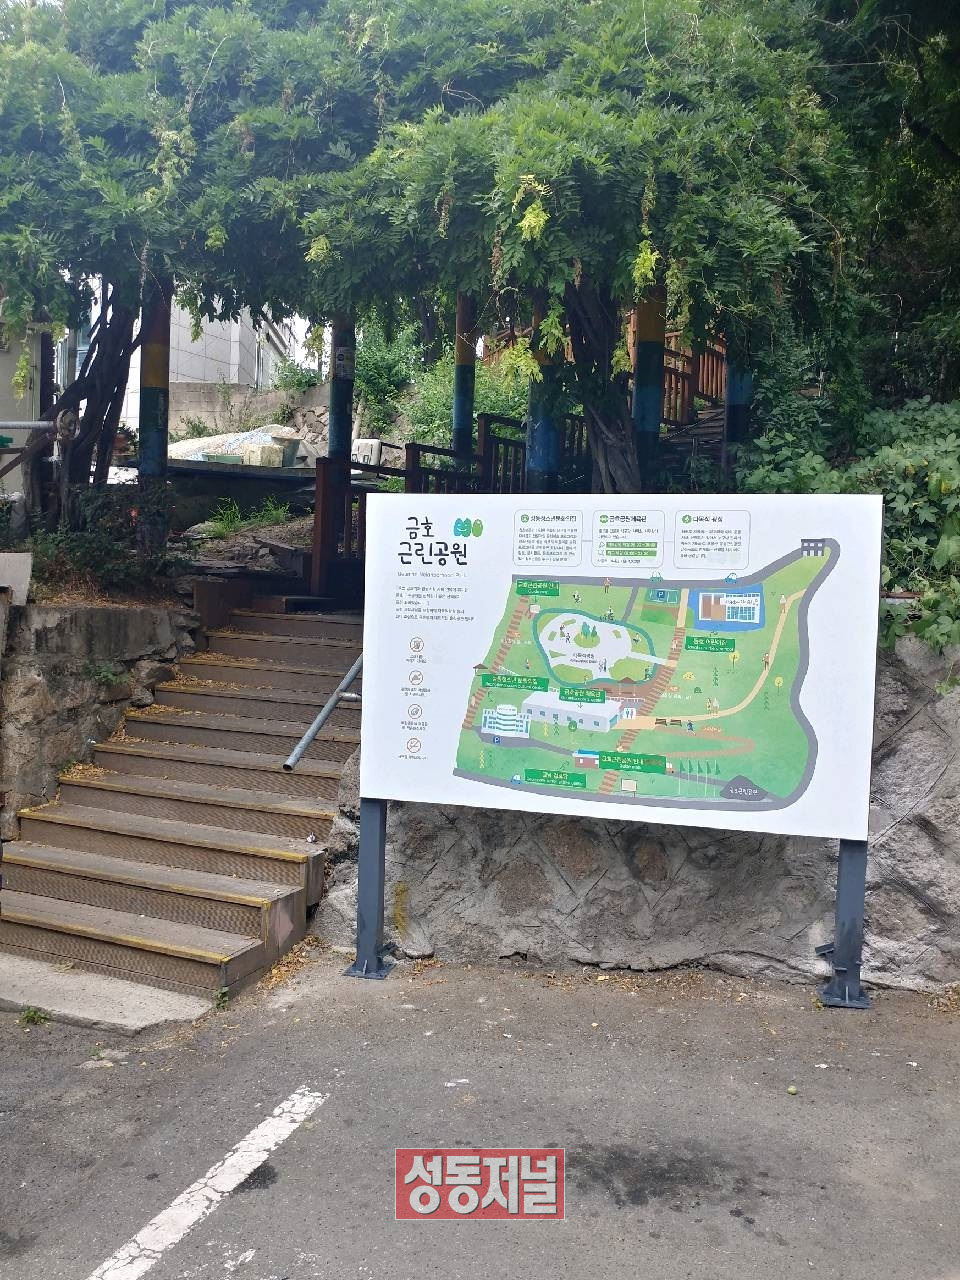 금호근린공원입구에 설치된 공원안내판 상세한 지도가 담겨 방문객의 편의성을 높였다.